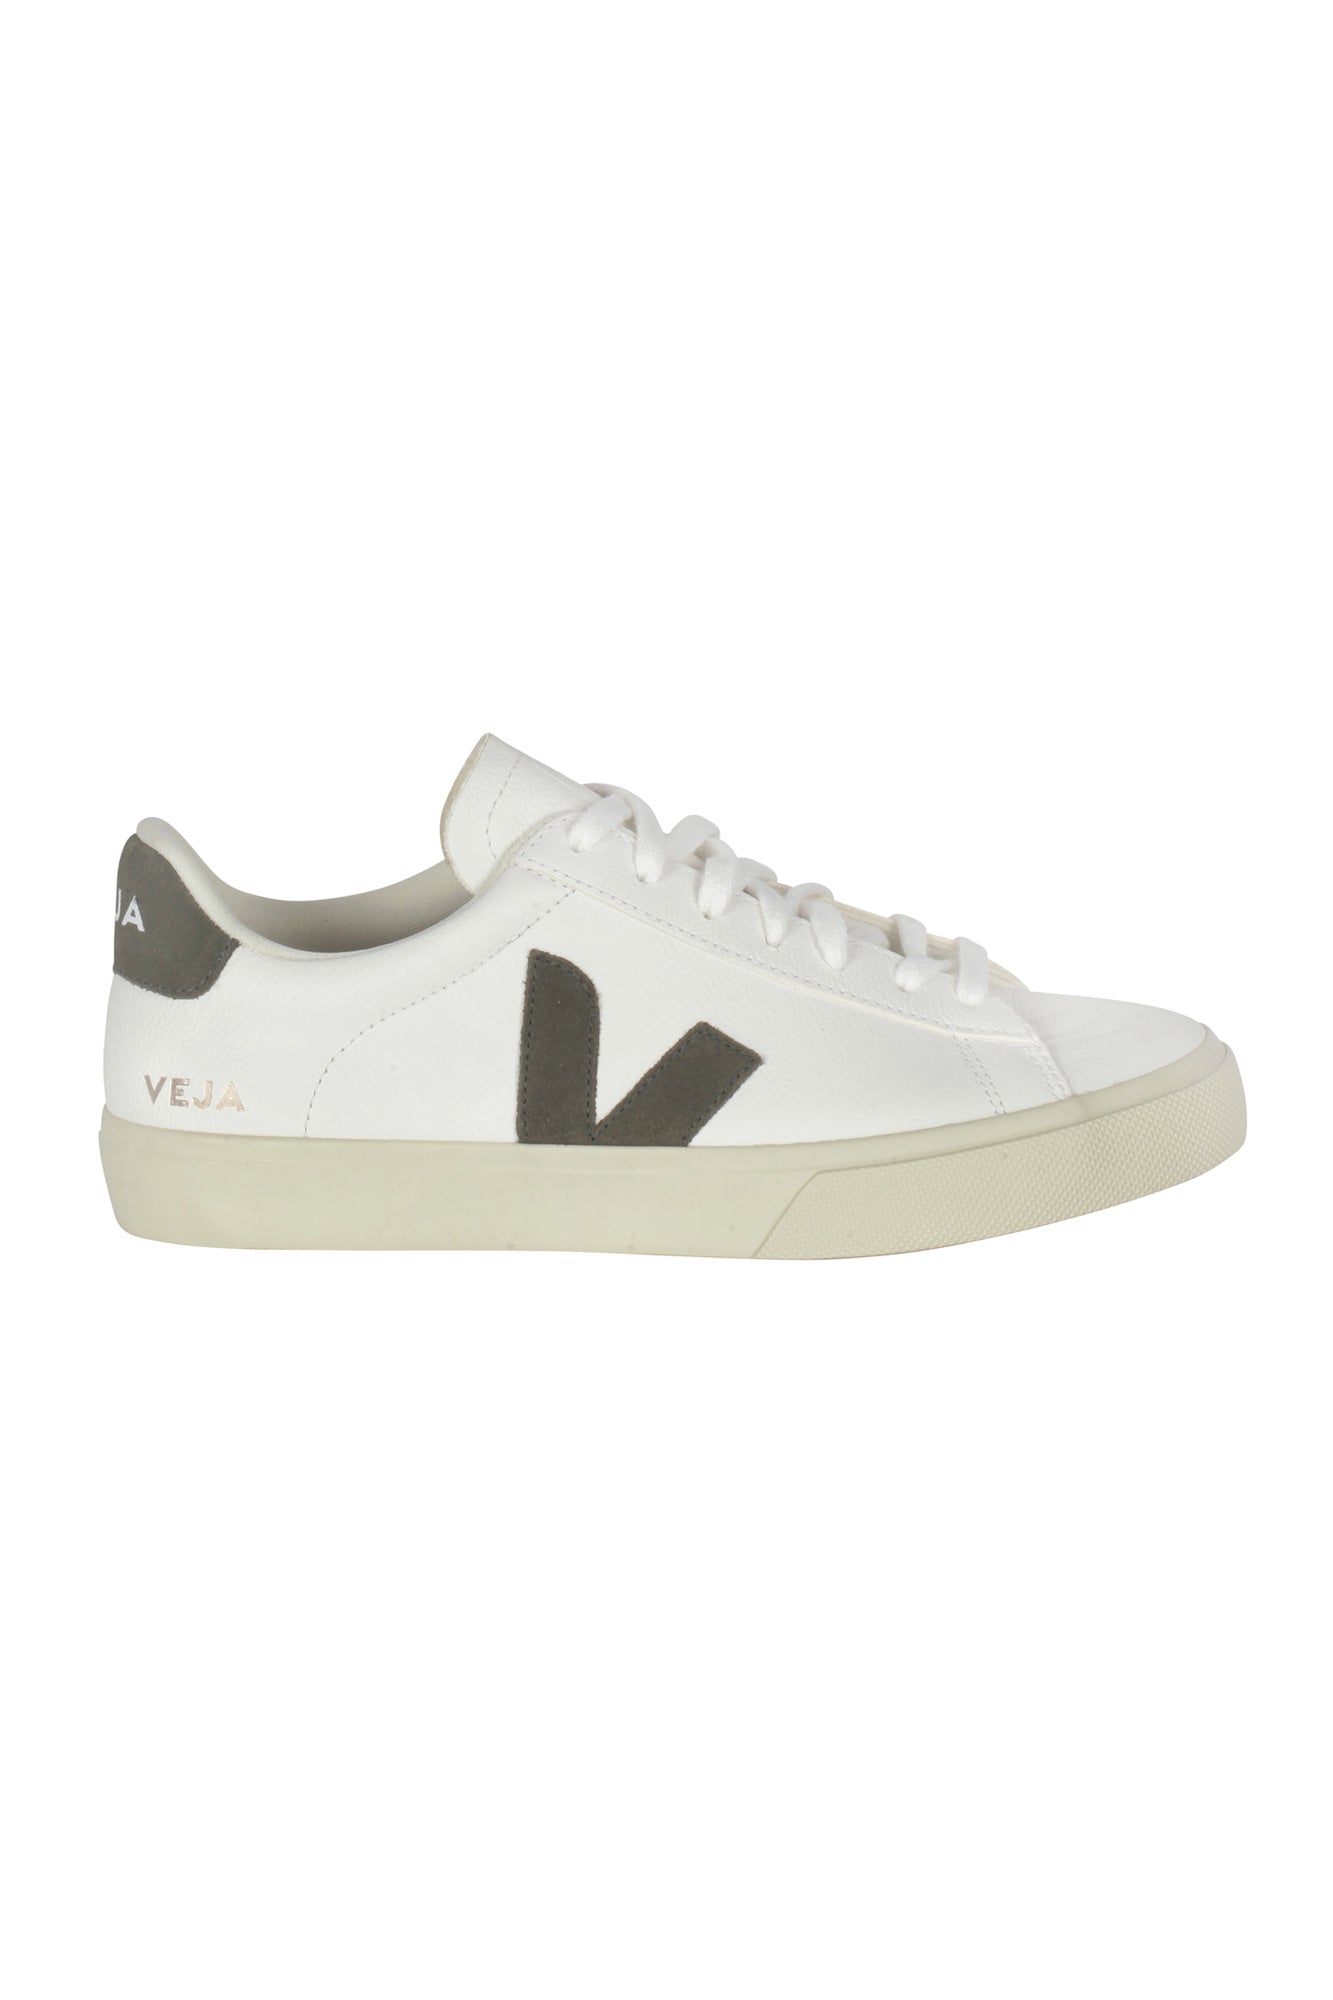 Veja - Sneakers - 430614 - Bianco/Militare